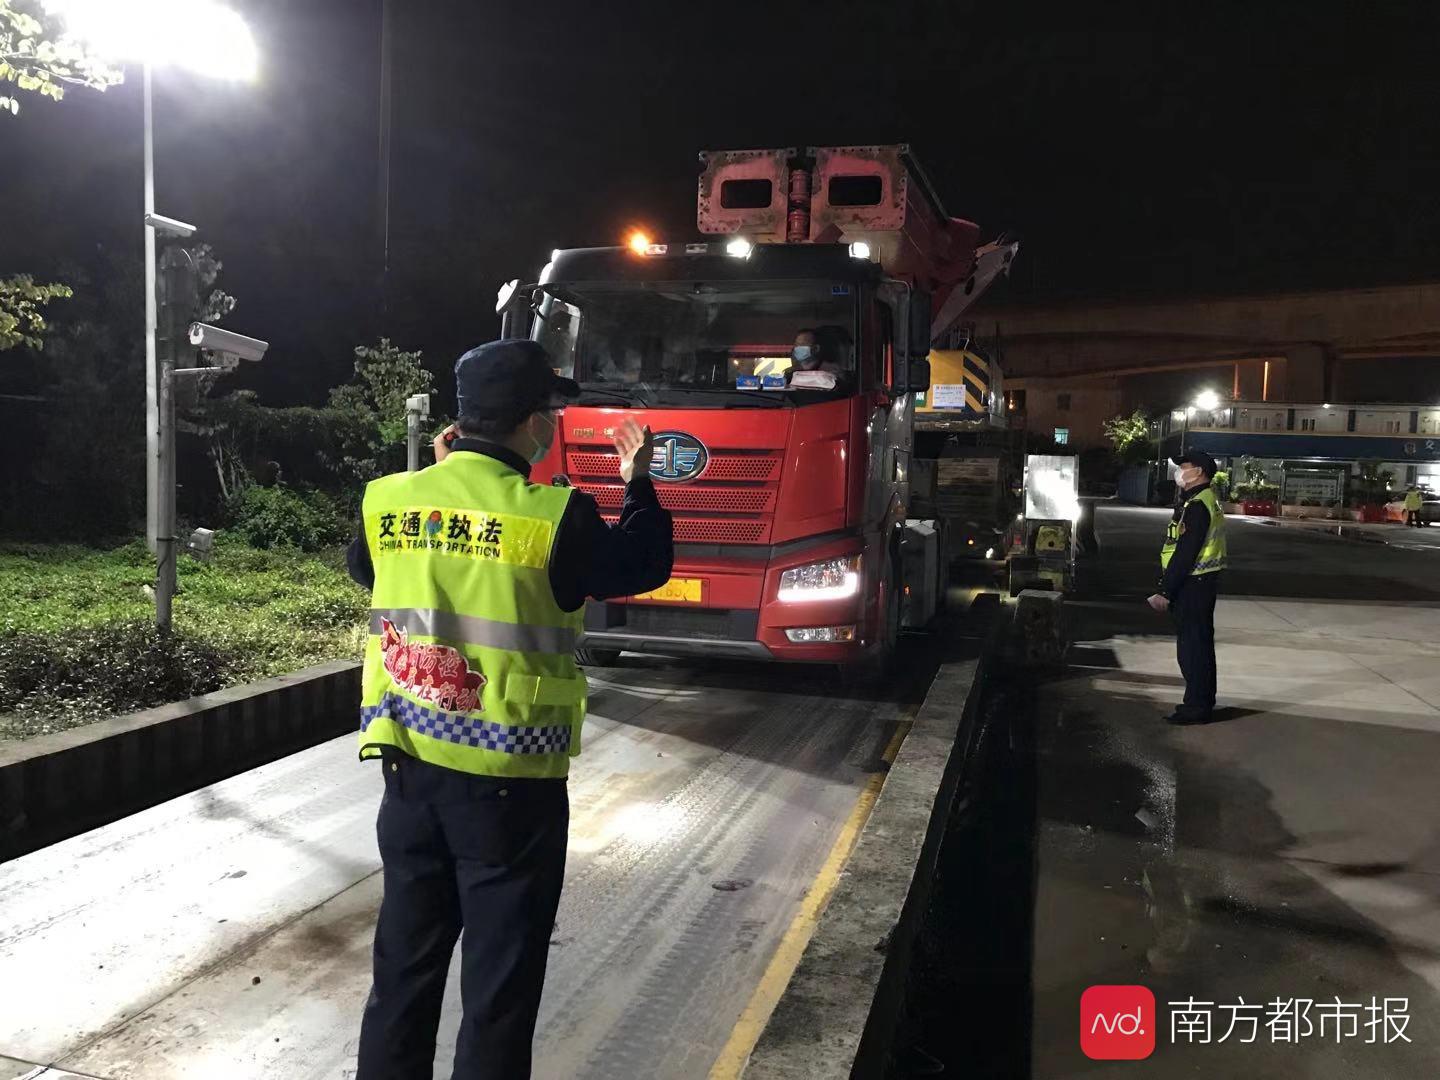 广州整治货运乱象,今年已查处超限超载货车3.56万辆次